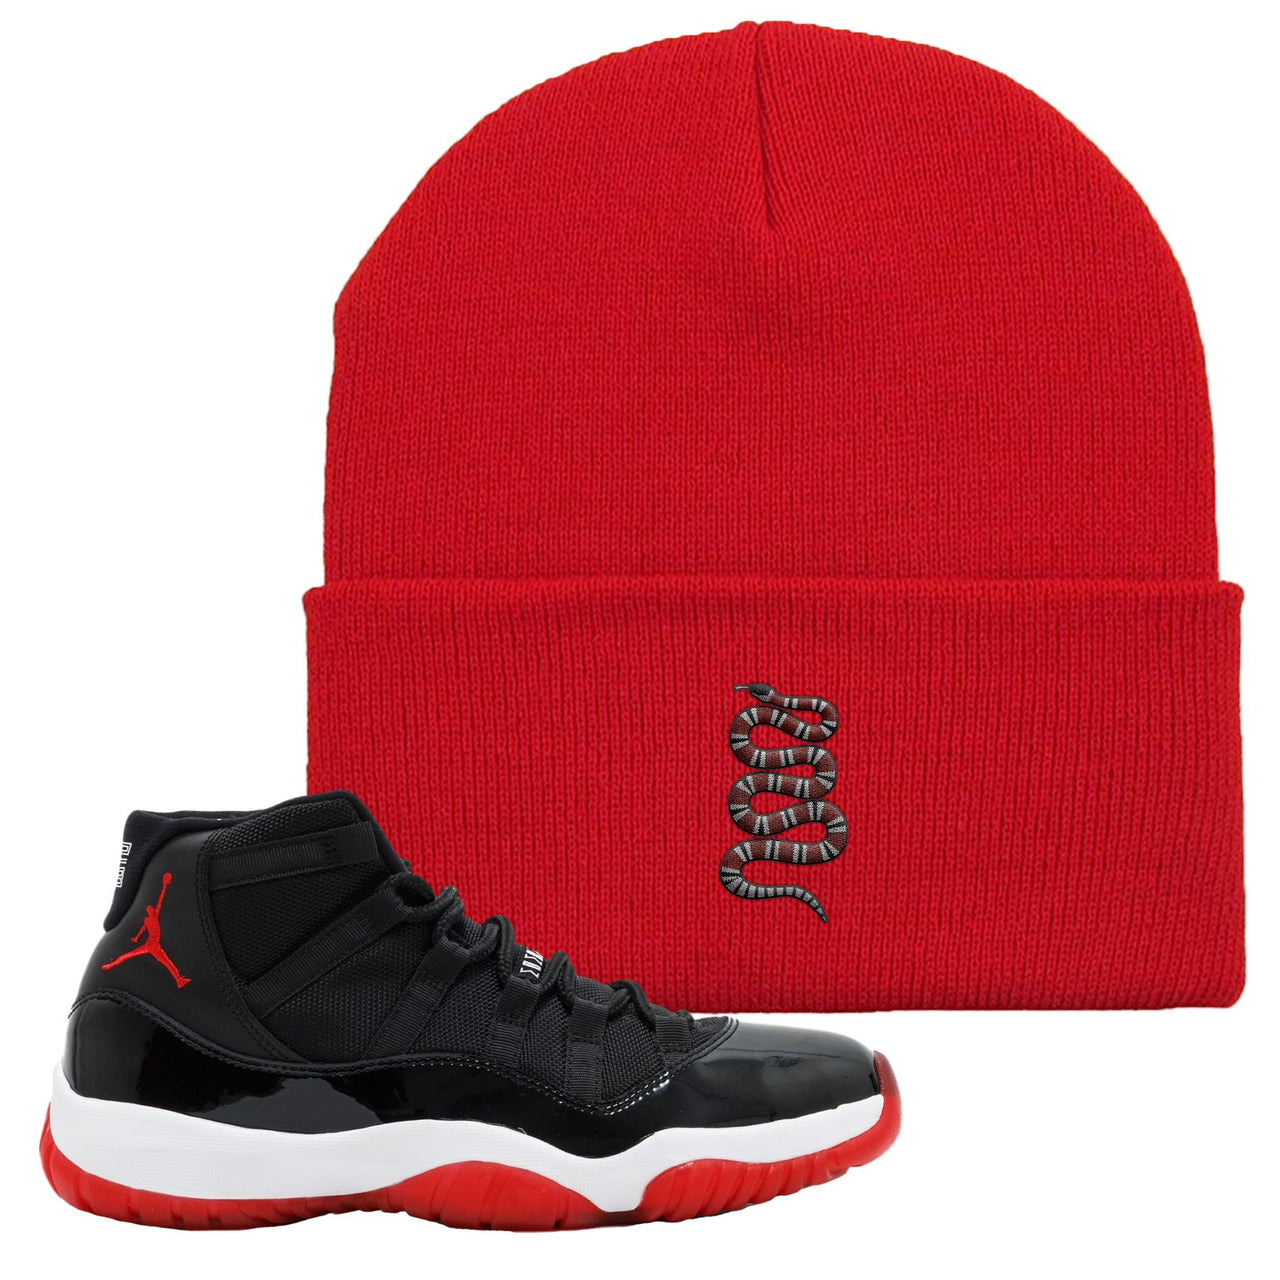 Jordan 11 Bred Coiled Snake Red Sneaker Hook Up Beanie